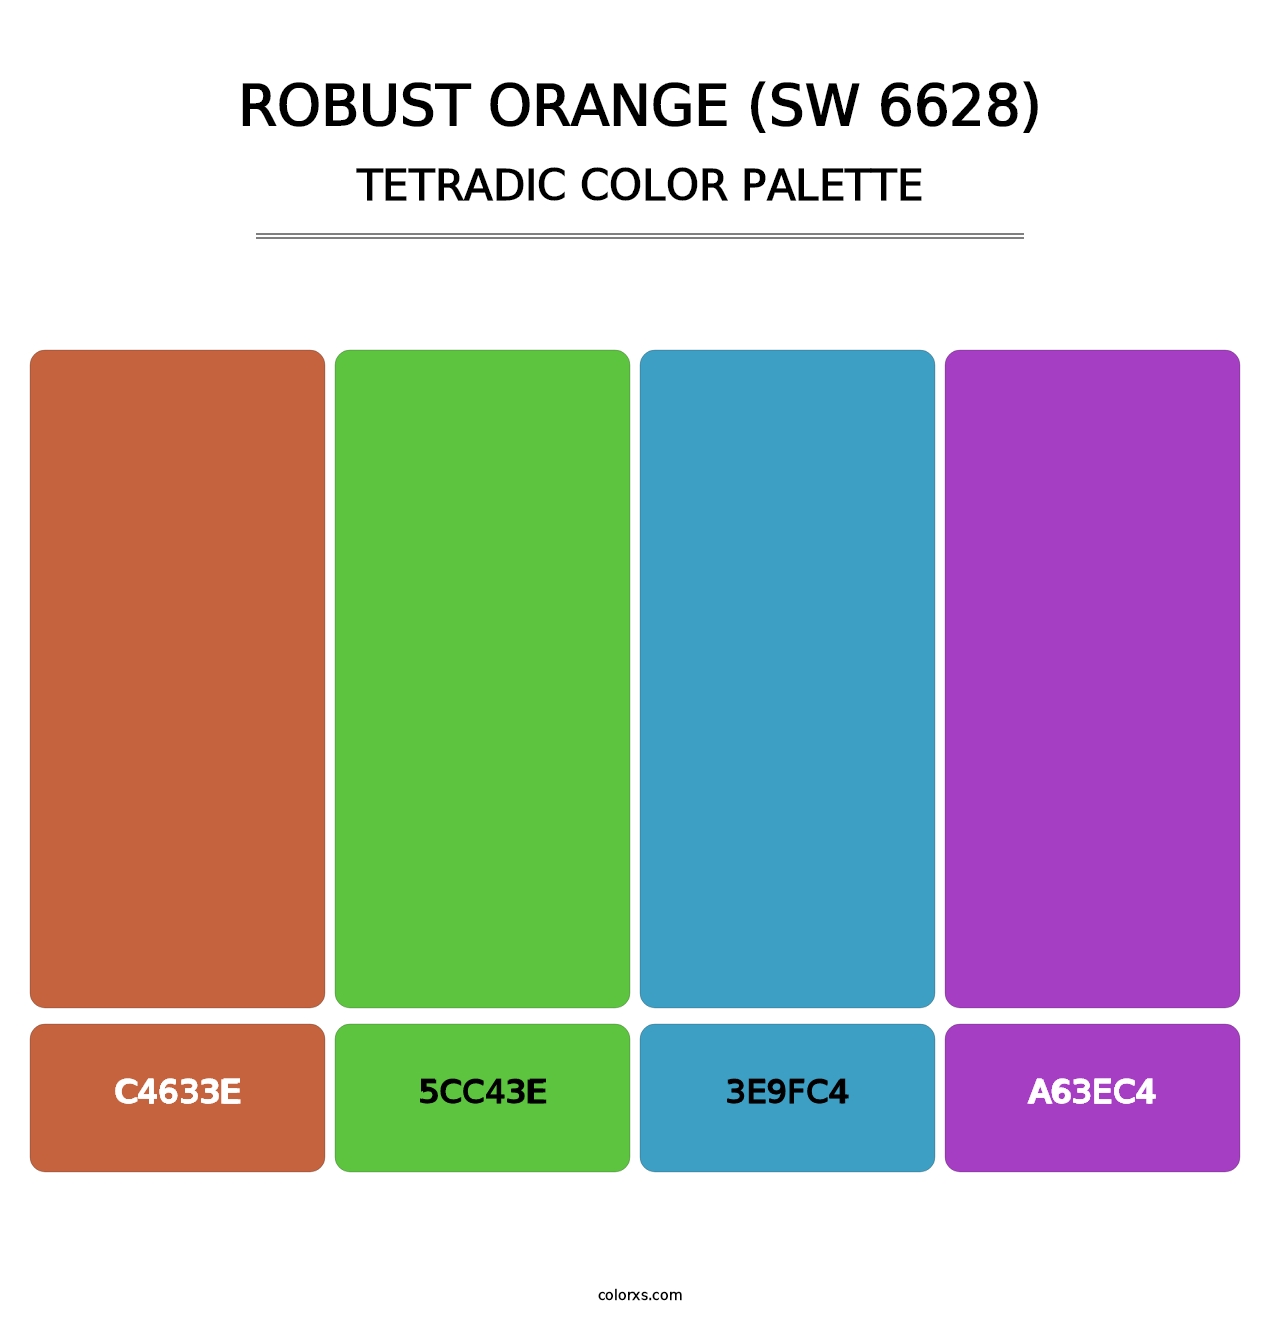 Robust Orange (SW 6628) - Tetradic Color Palette